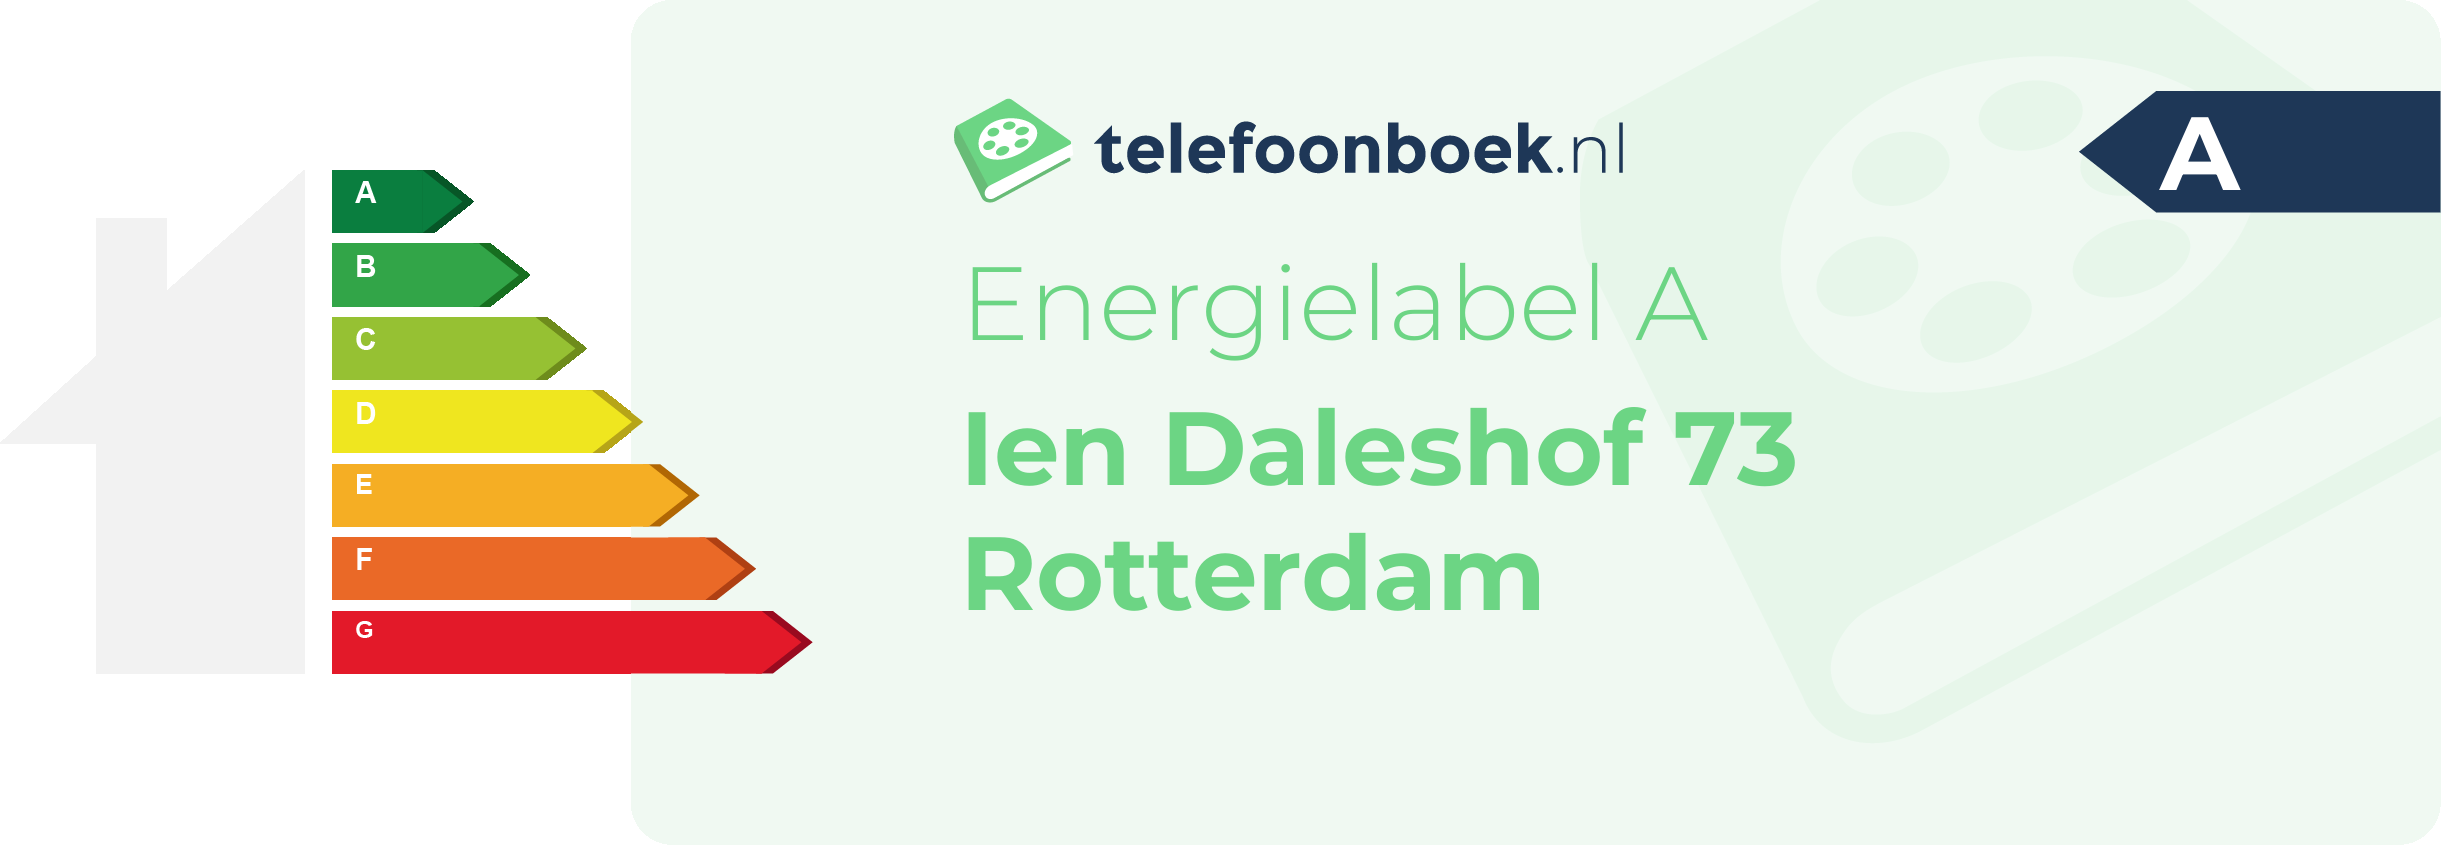 Energielabel Ien Daleshof 73 Rotterdam